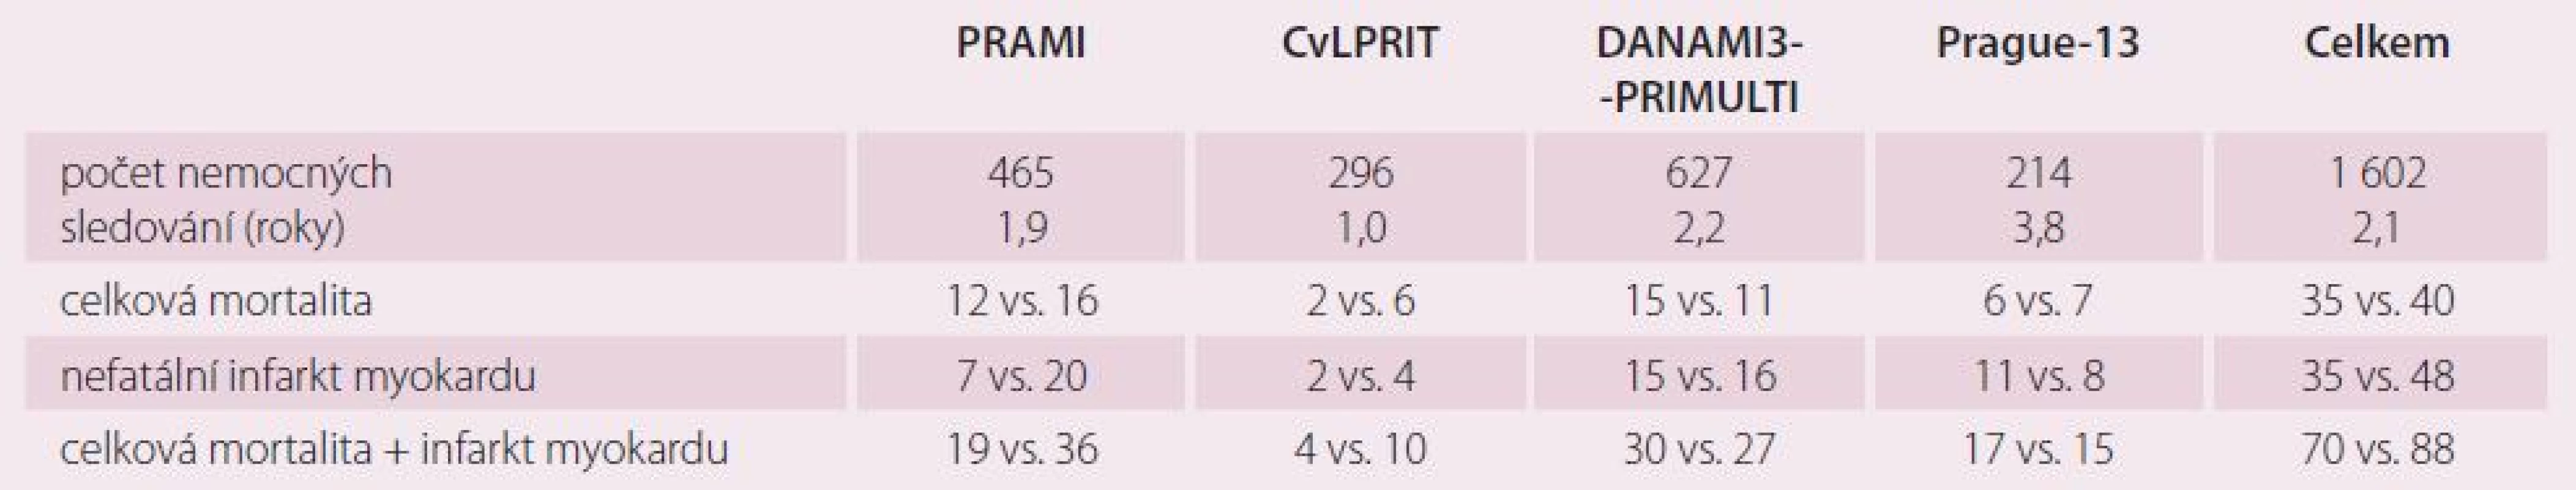 Srovnání studií PRAMI, CVLPRIT, DANAMI3-PRIMULTI a Prague-13 (PCI vs. konzervativní skupina).